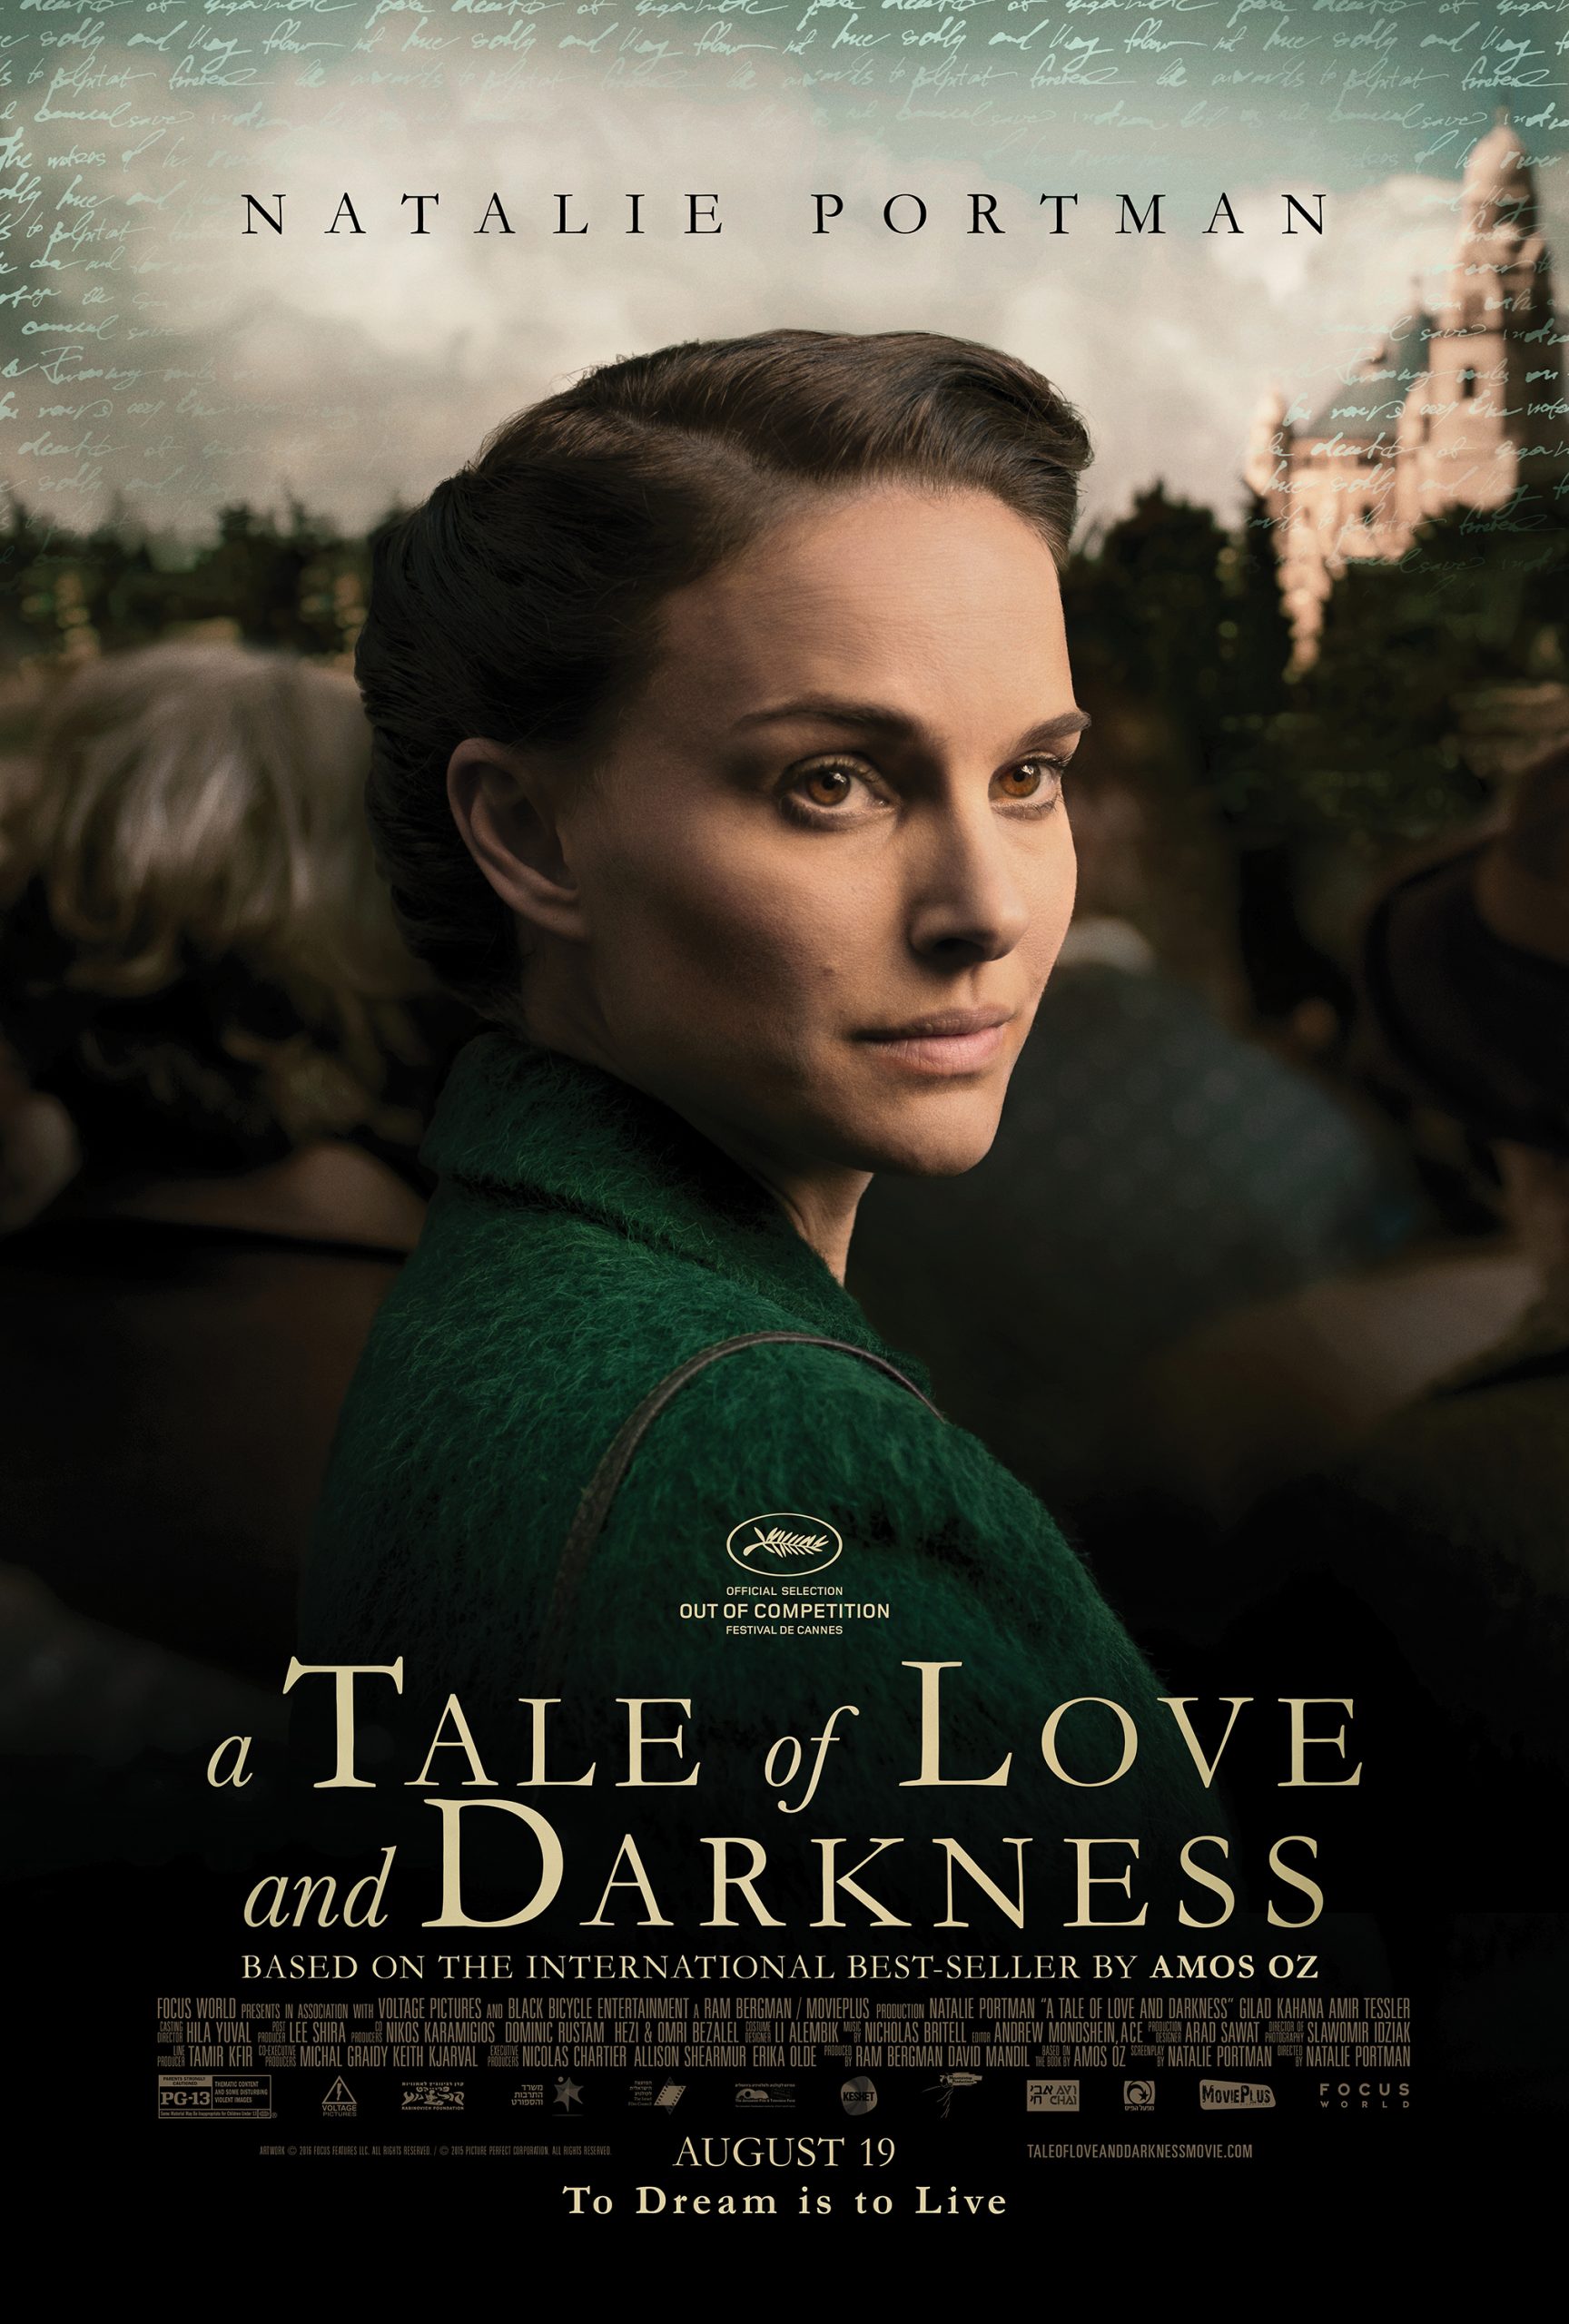 Natalie lần đầu thử sức làm đạo diễn với bộ phim đầu tay A Tale of Love and Darkness